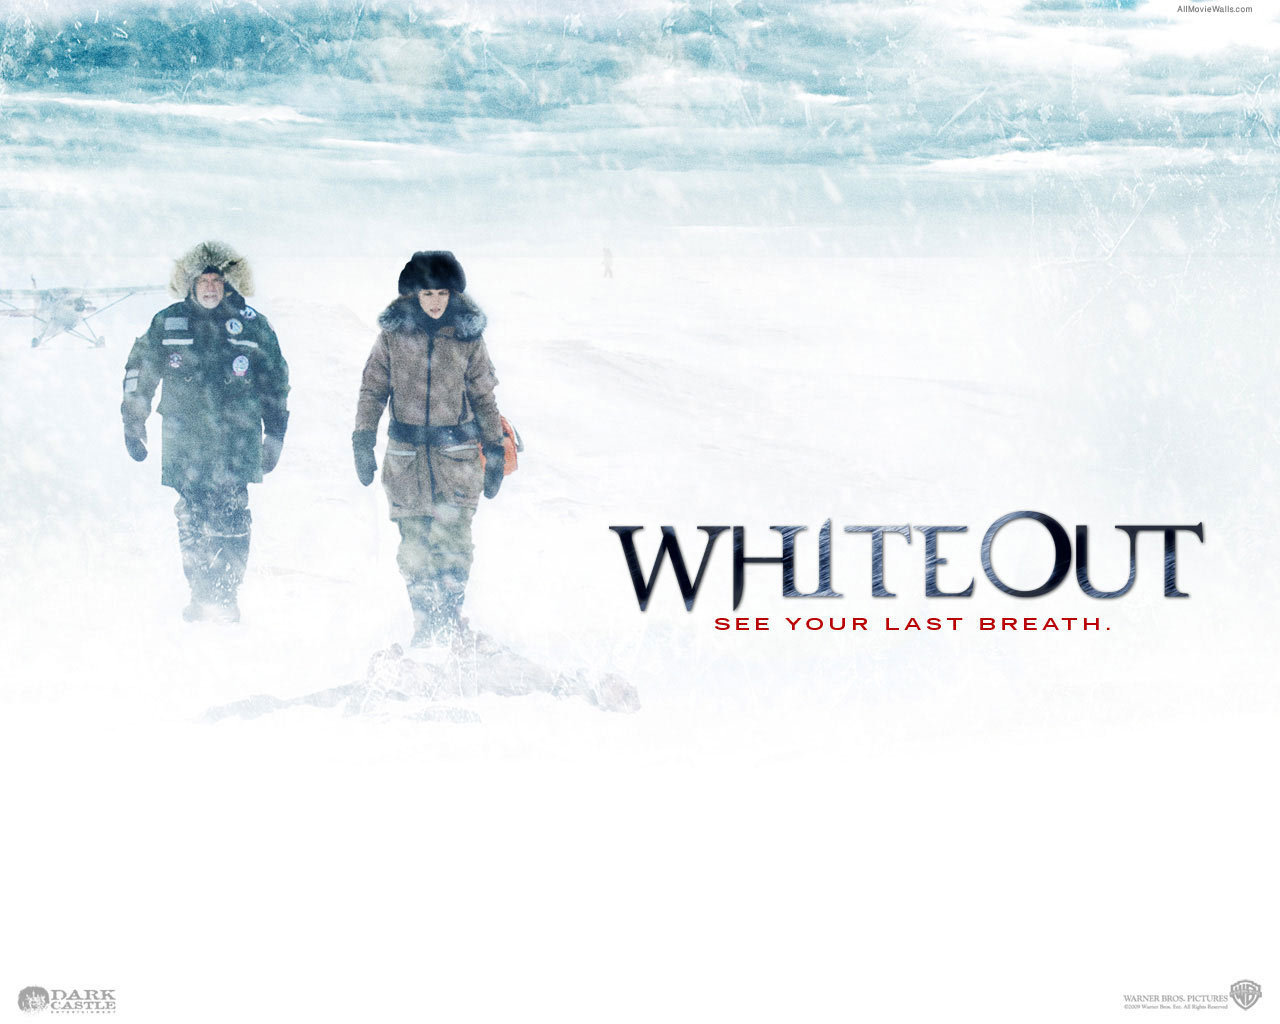 Movie Whiteout